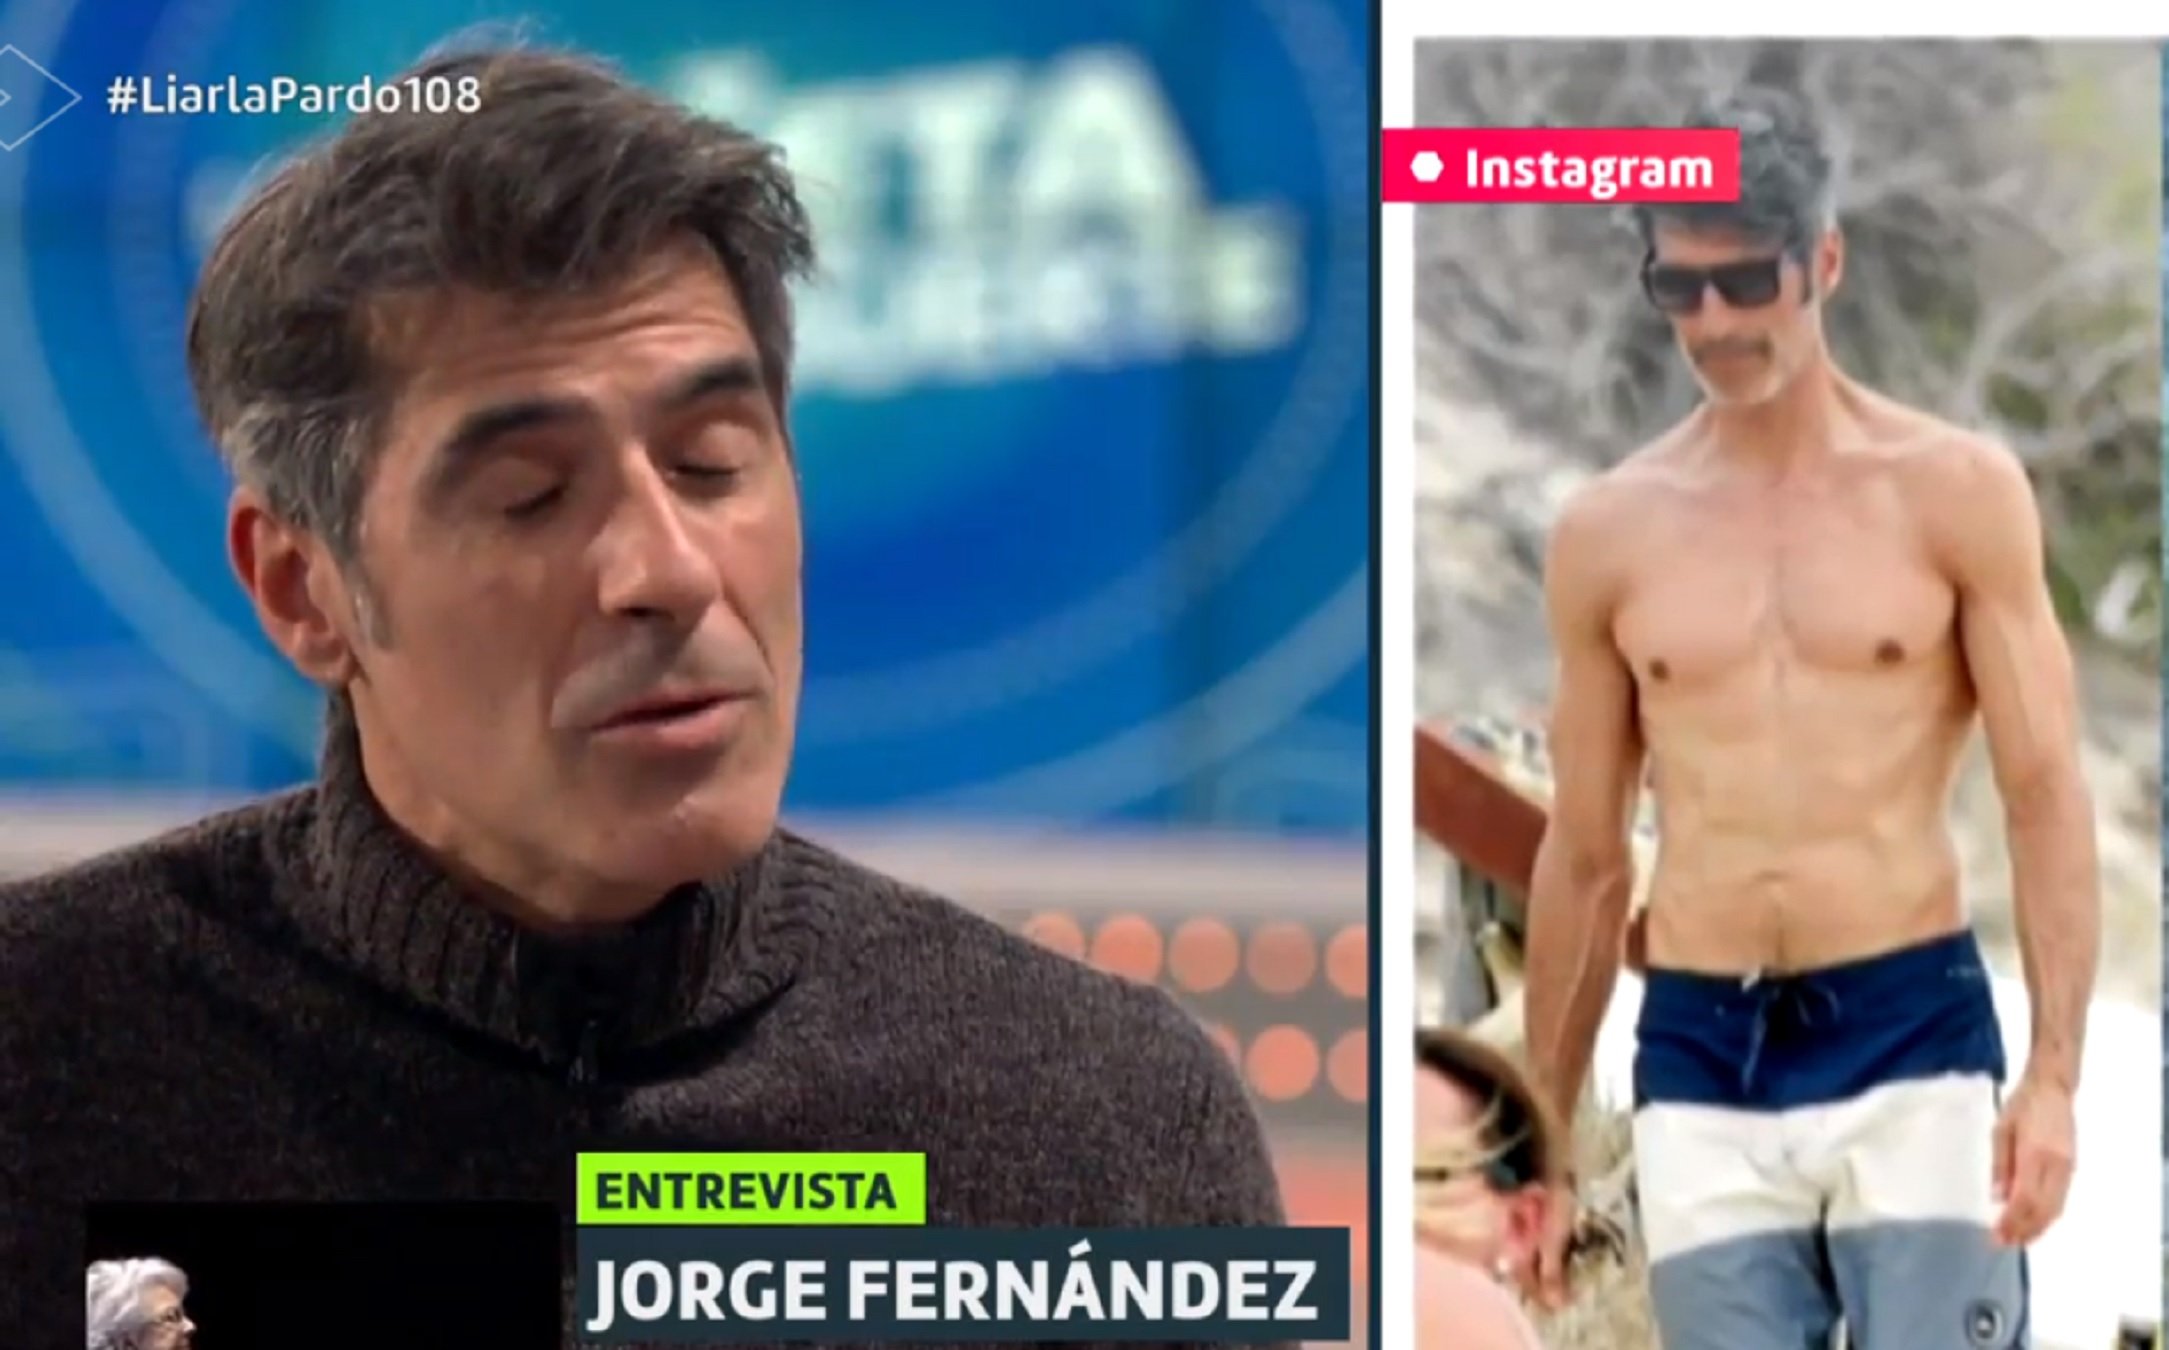 Jorge Fernández, gran canvi físic i malaltia: "Ayuno 15 horas al día, sin comer"